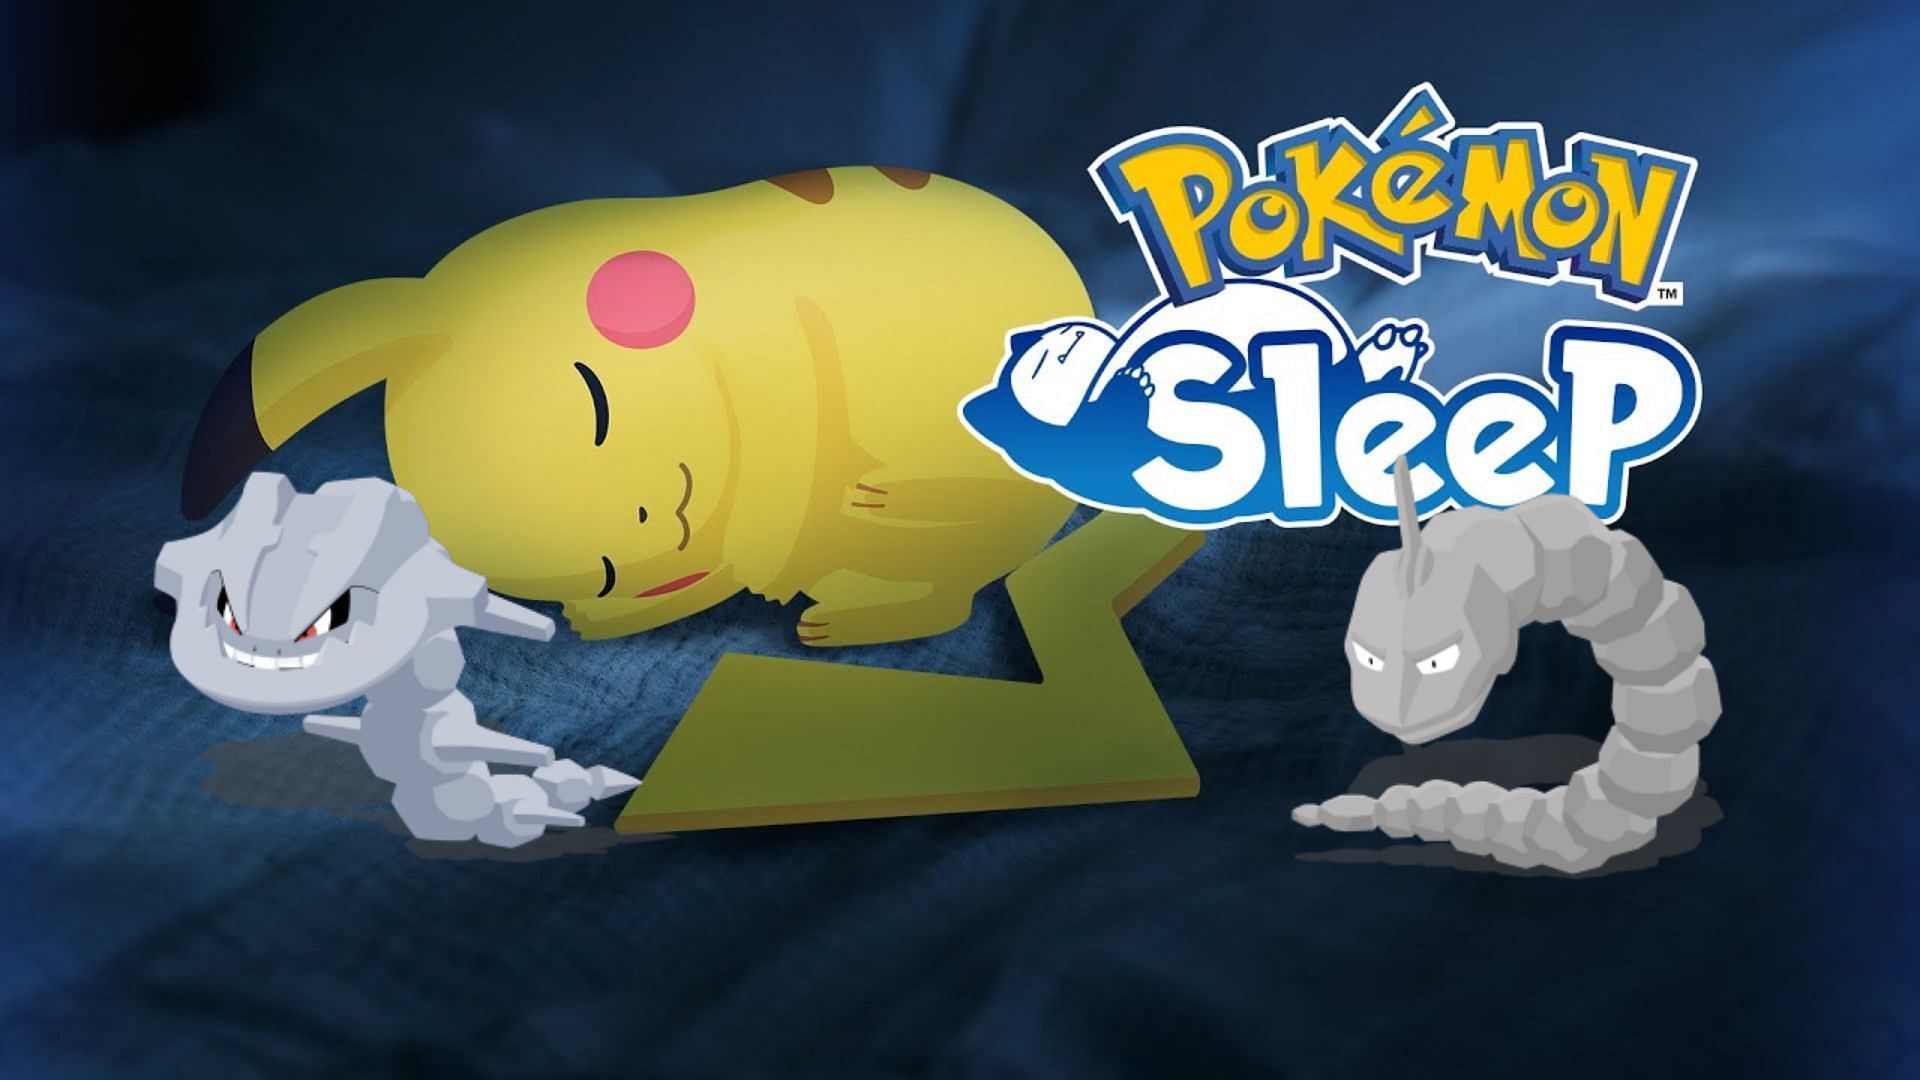 Pokémon Sleep: Onix and Steelix Debut